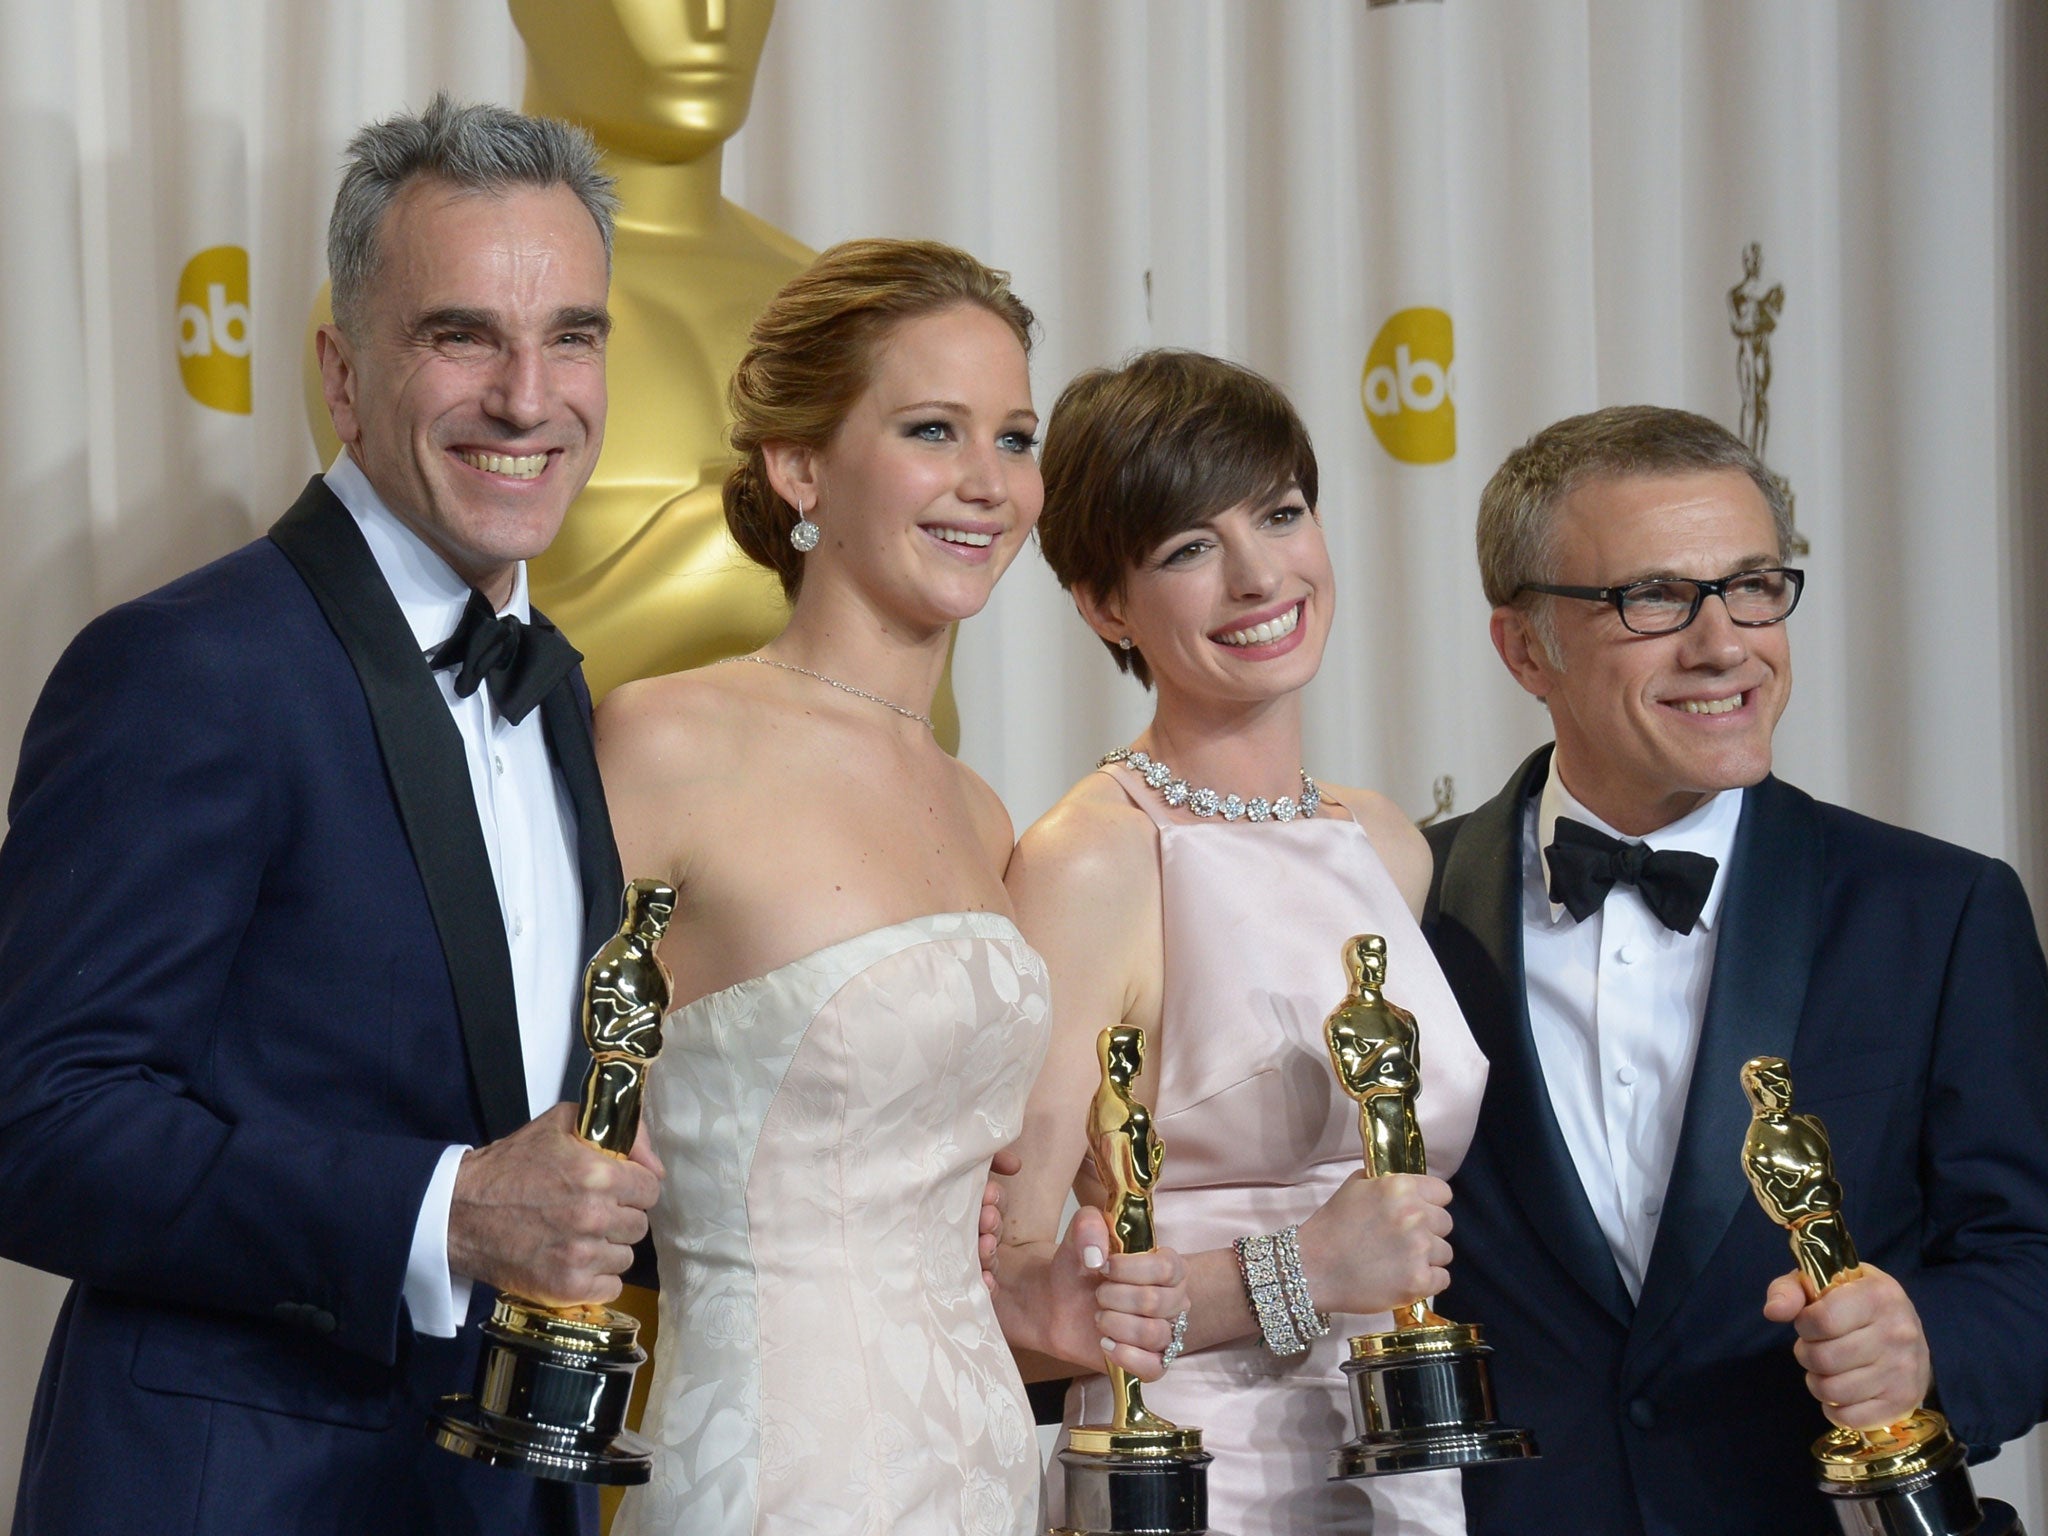 25 Of The Oscars Best Dressed Celebs Ever: Jennifer Lawrence, Angelina Jolie  & More